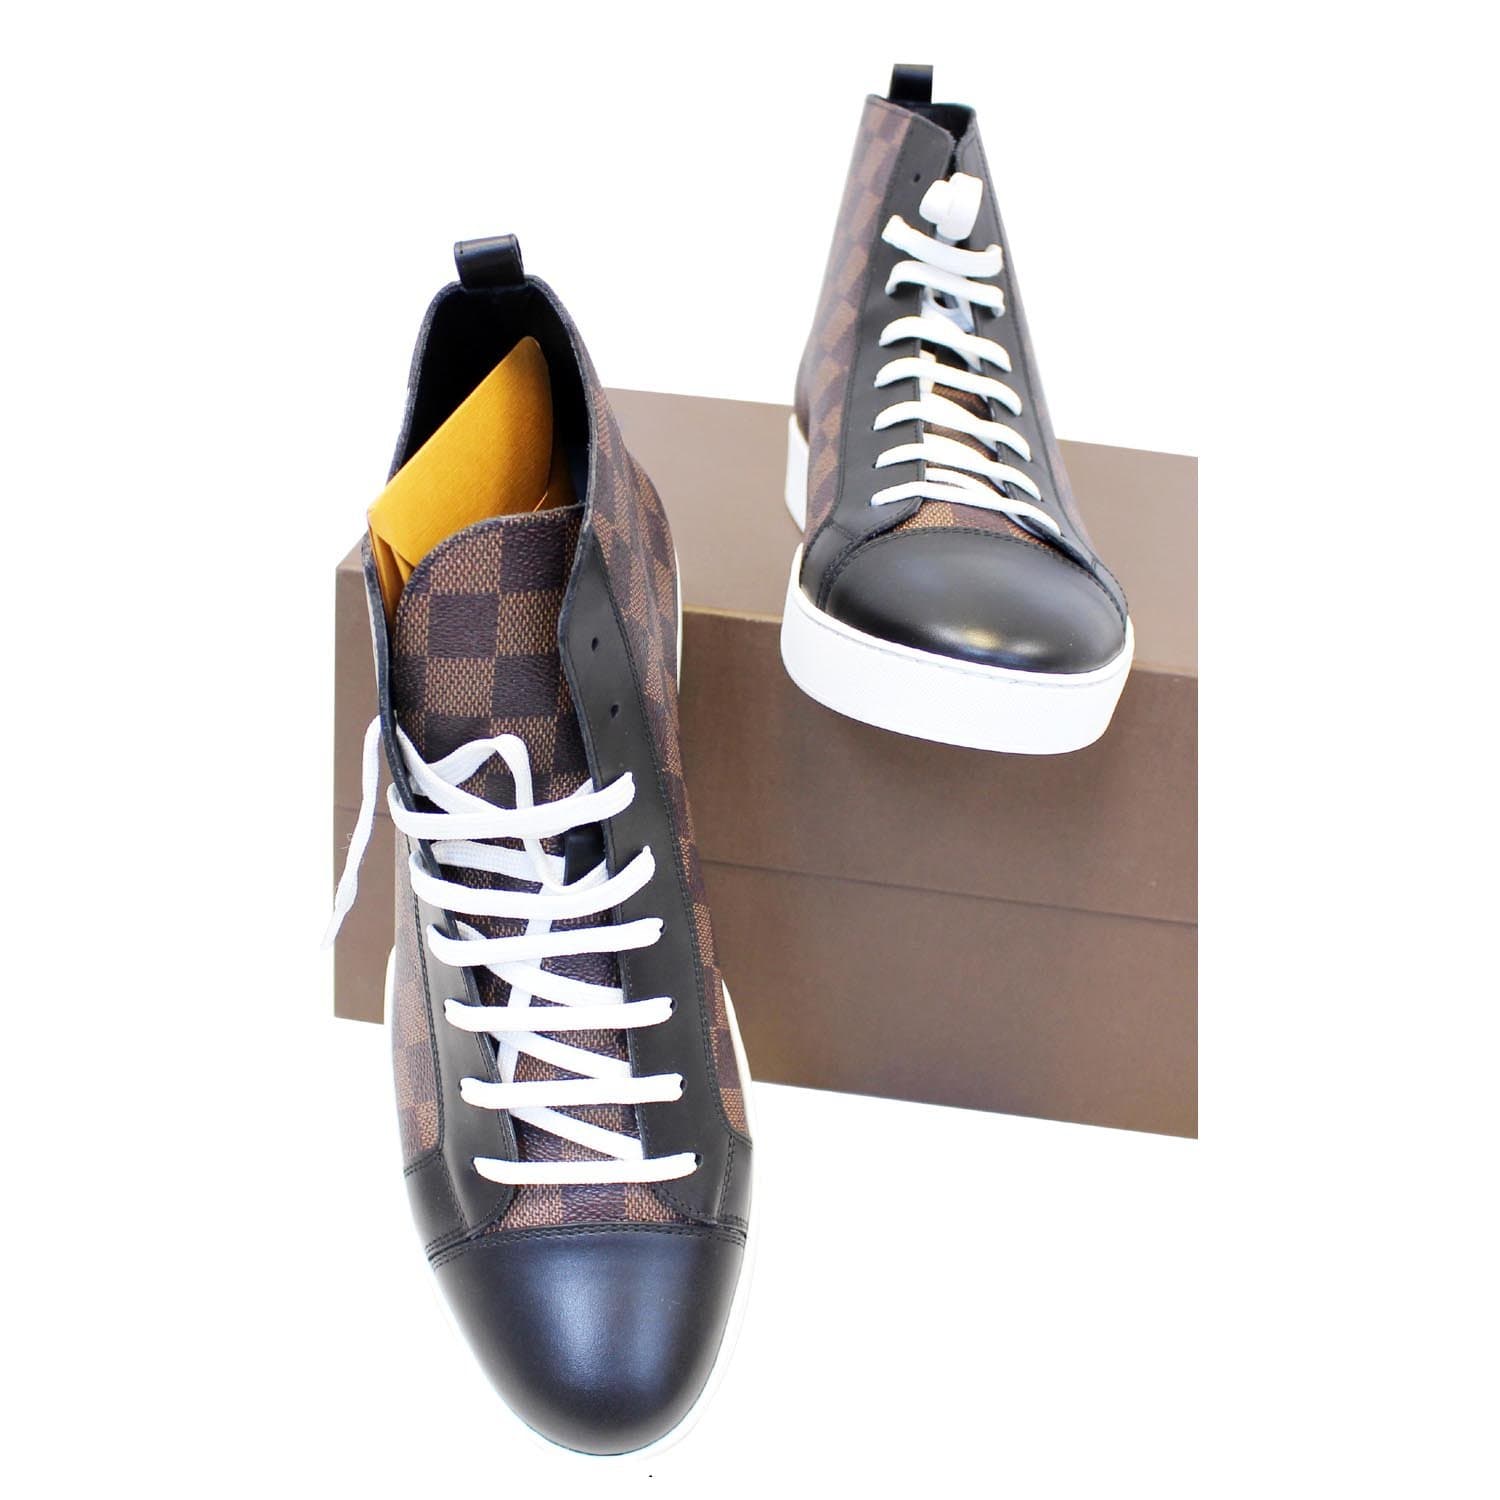 Louis Vuitton - LV Trainer Damier Ebene Lace-up shoes - Size: Shoes / EU 41  - Catawiki